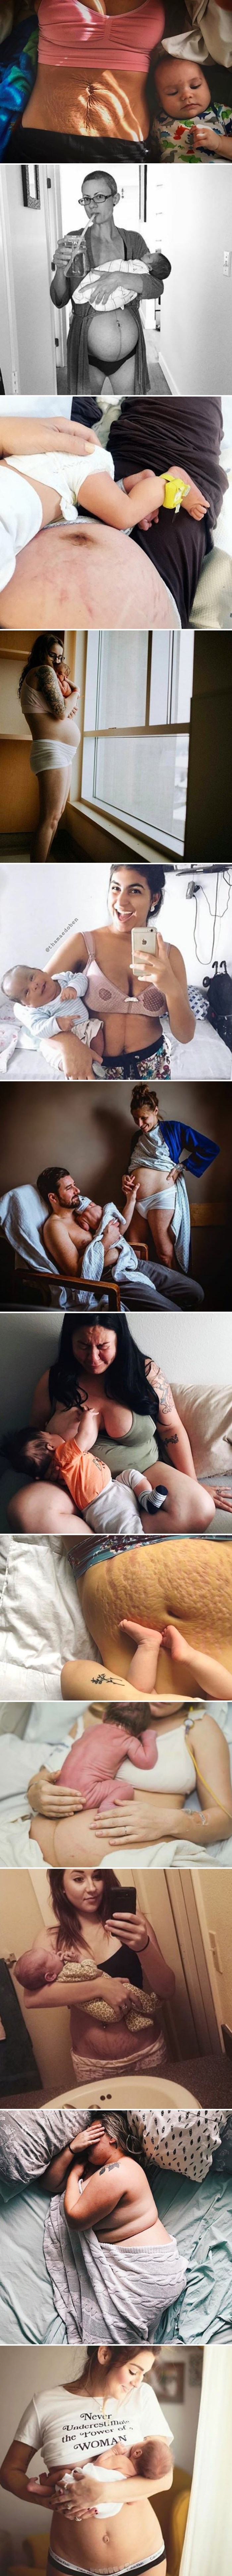 Novopečene mame su sasvim otvoreno podijelile slike nakon porođaja i otkrile istinu o njihovim tijelima